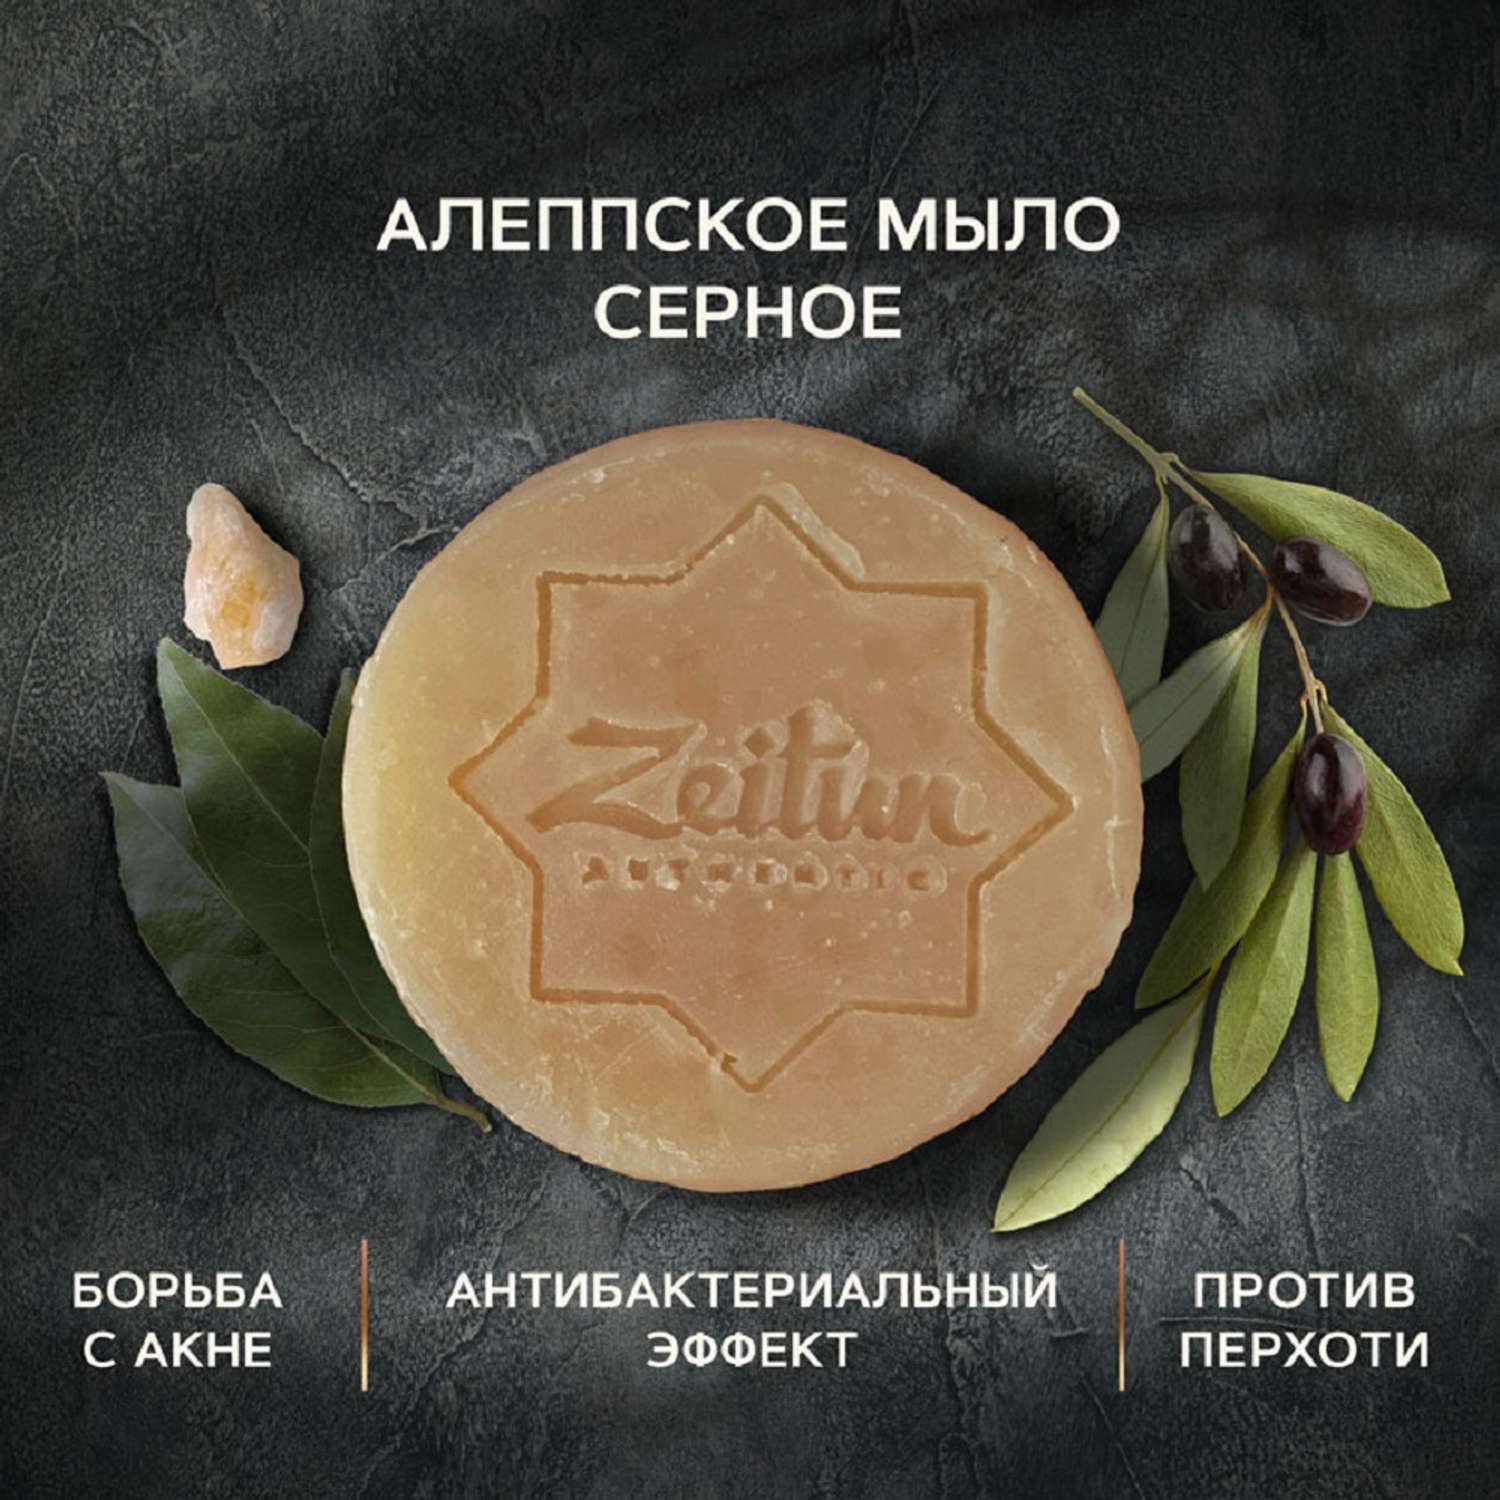 Мыло для лица натуральное Zeitun для умывания серное Алеппское от прыщей и акне 105 г - фото 1